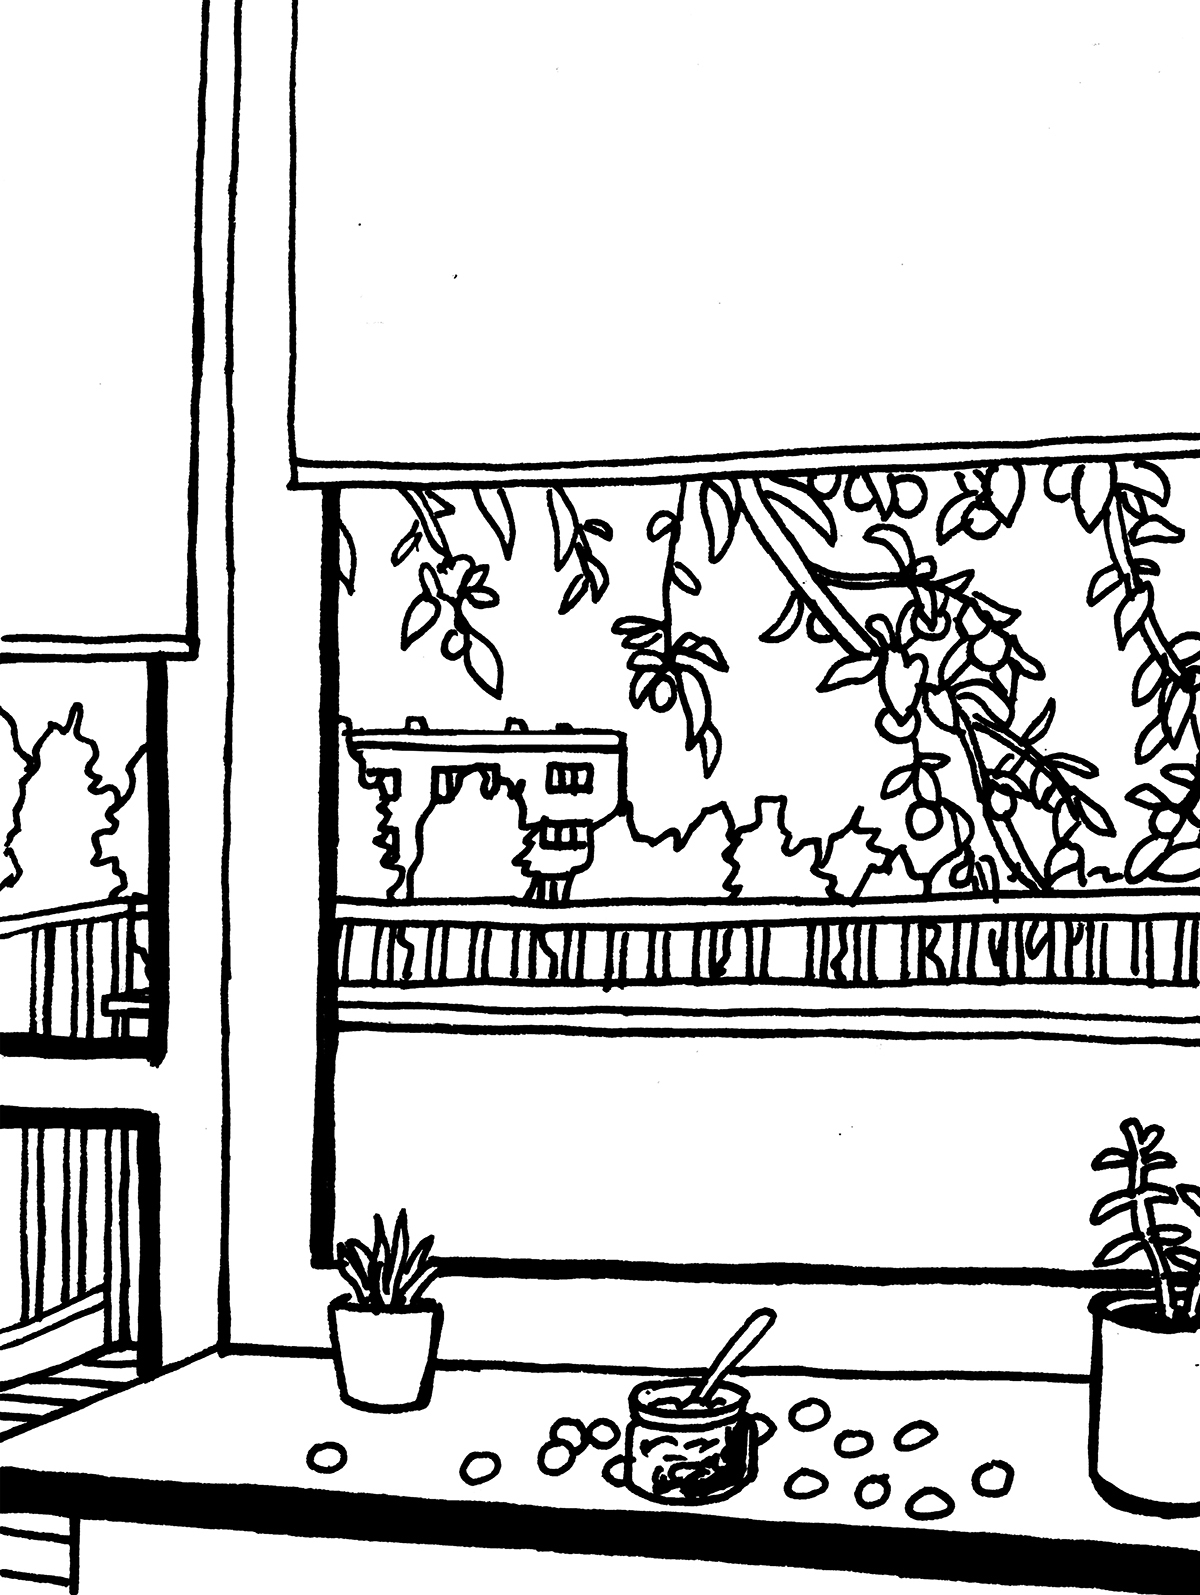 Widok z okna mieszkania z balkonem na pokryte owocami gałęzie. Na parapecie znajduje się słoik dżemu i rozrzucone wokół niego owoce mirabelki, a także dwie rośliny doniczkowe